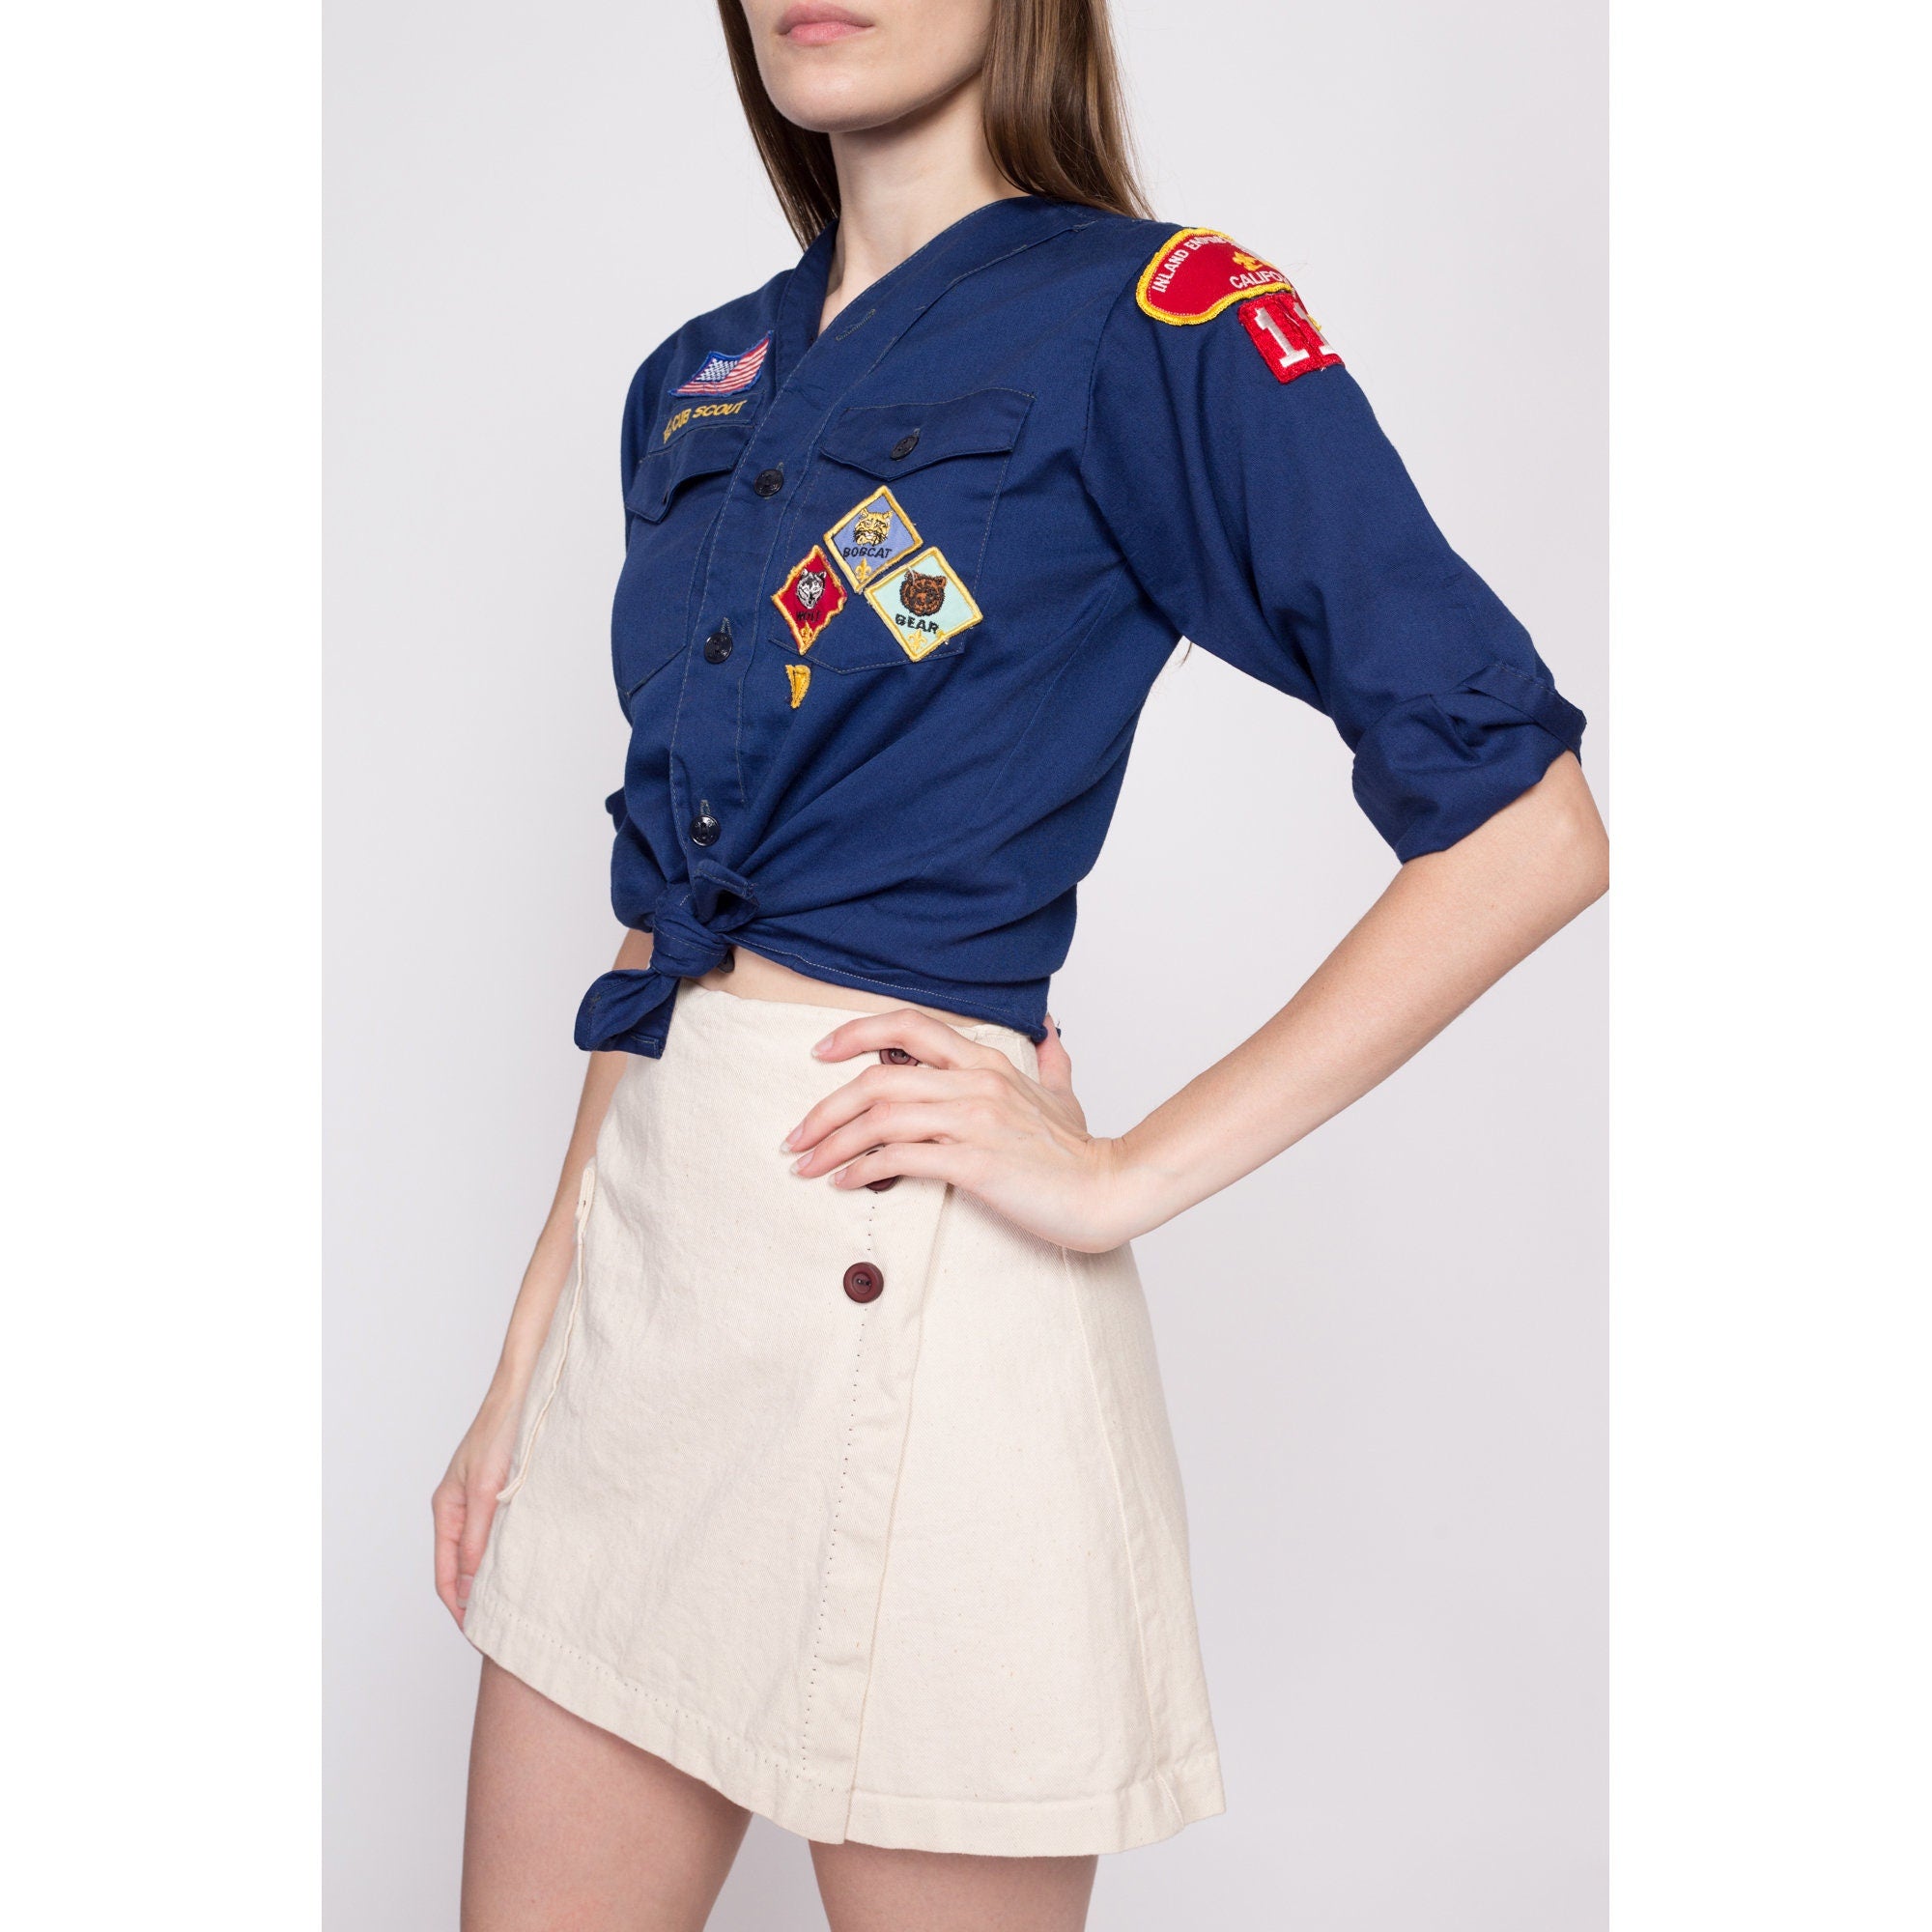 cub scout uniform shirt